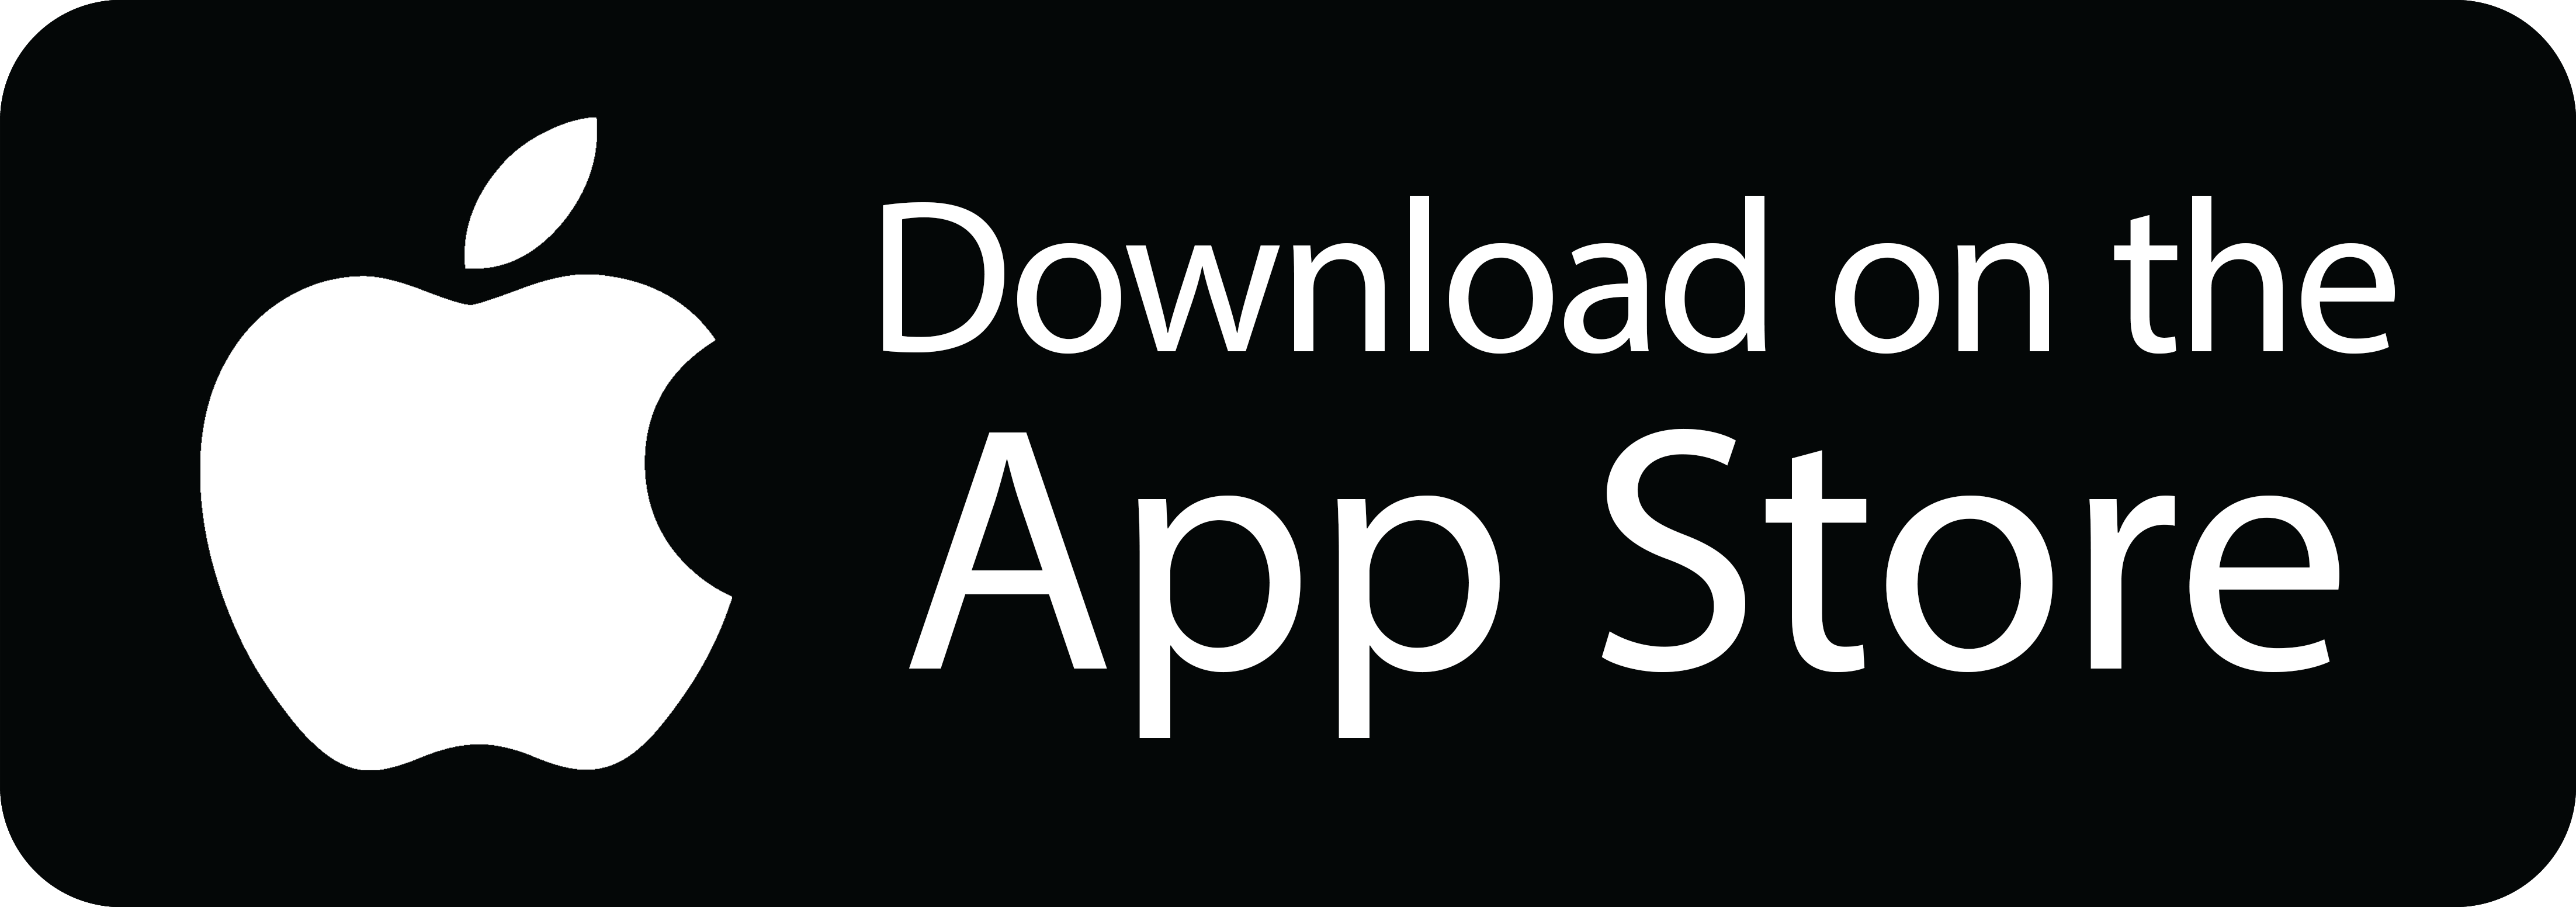 app store apple download